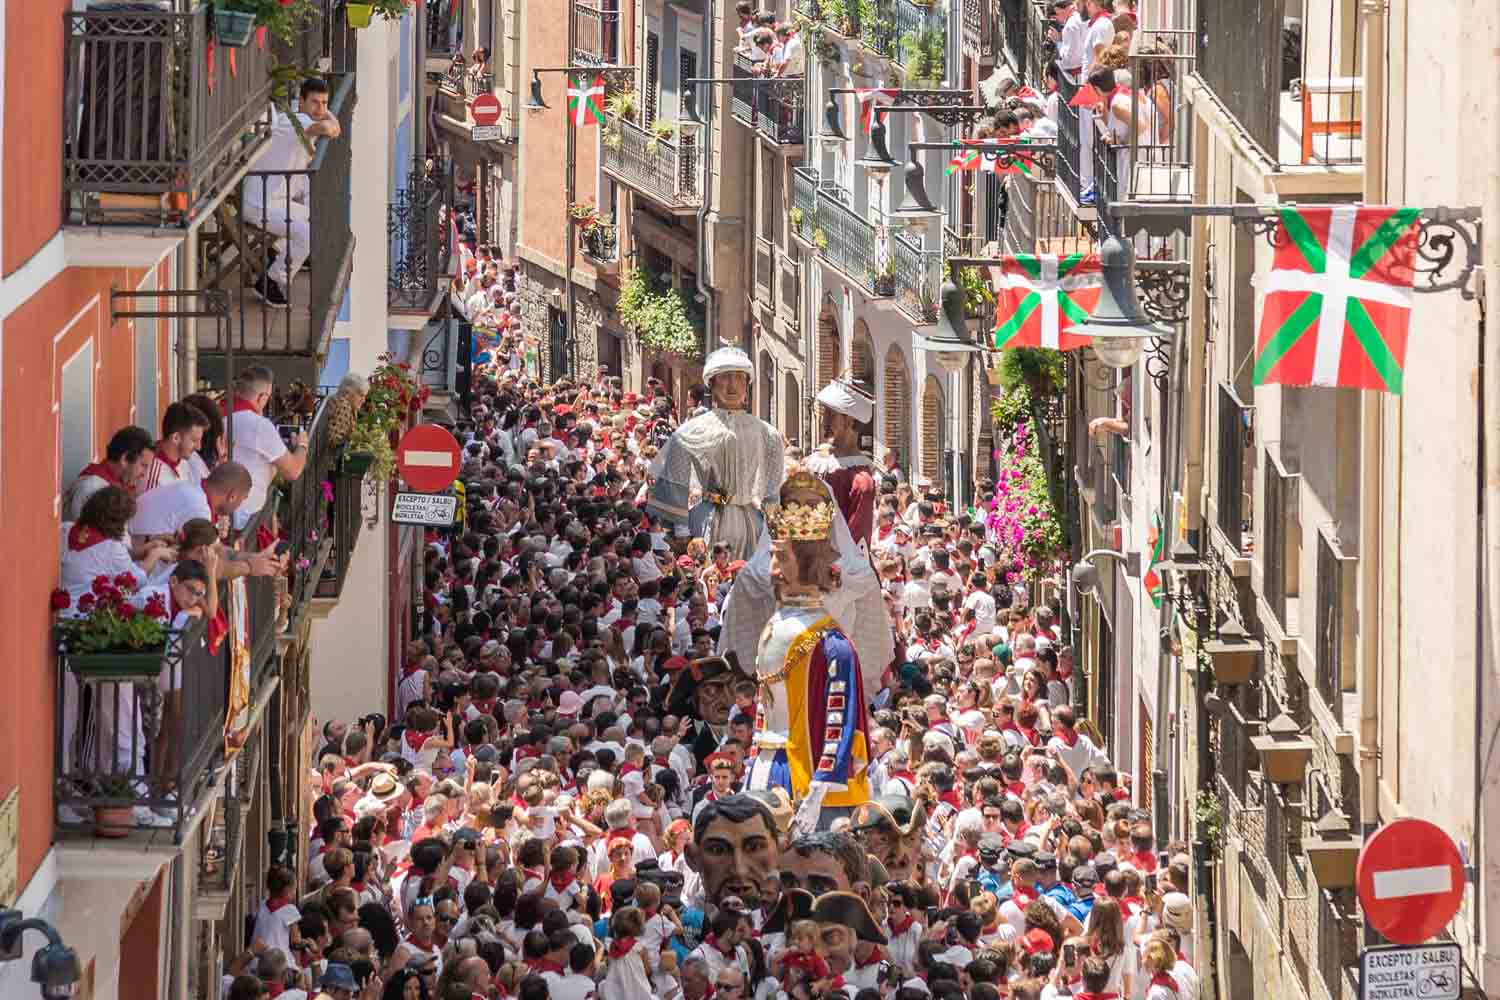 San Fermín